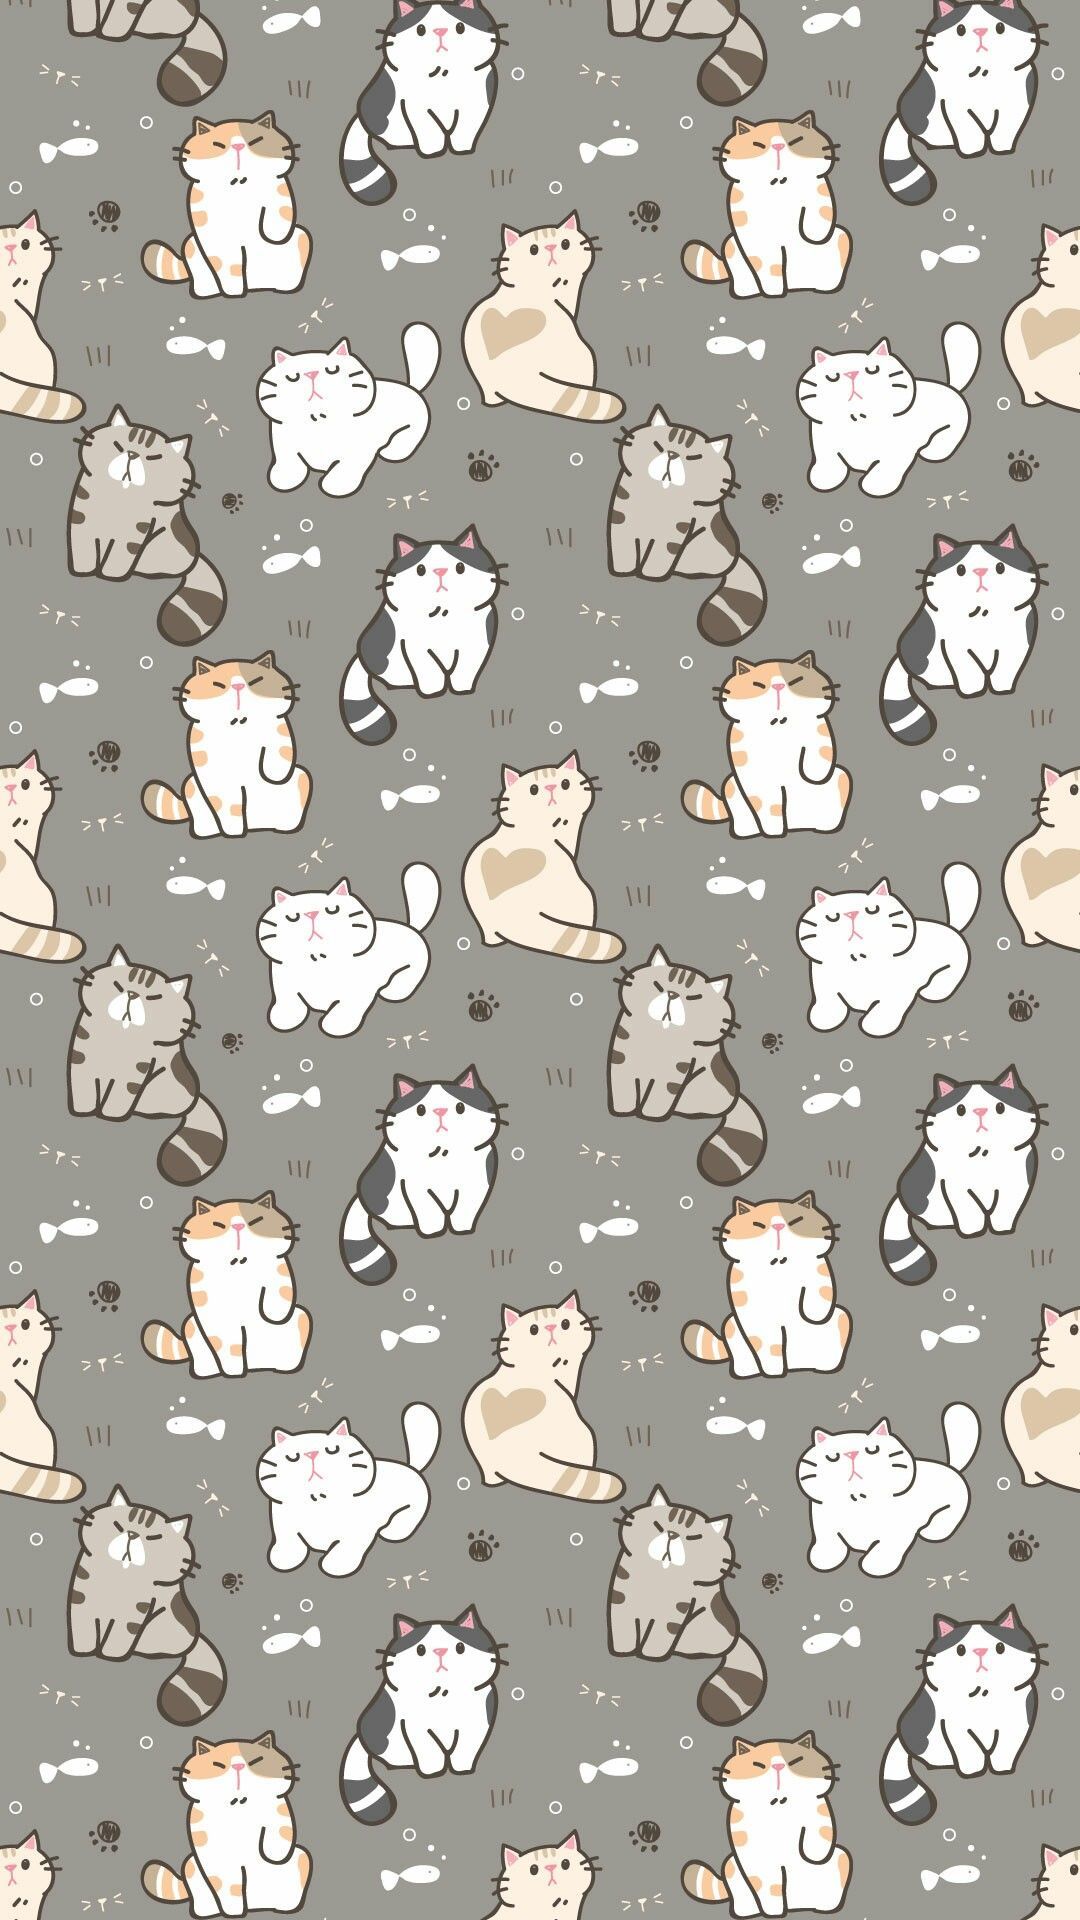 Gato Bonito. Cute cat wallpaper, Cat phone wallpaper, iPhone wallpaper cat